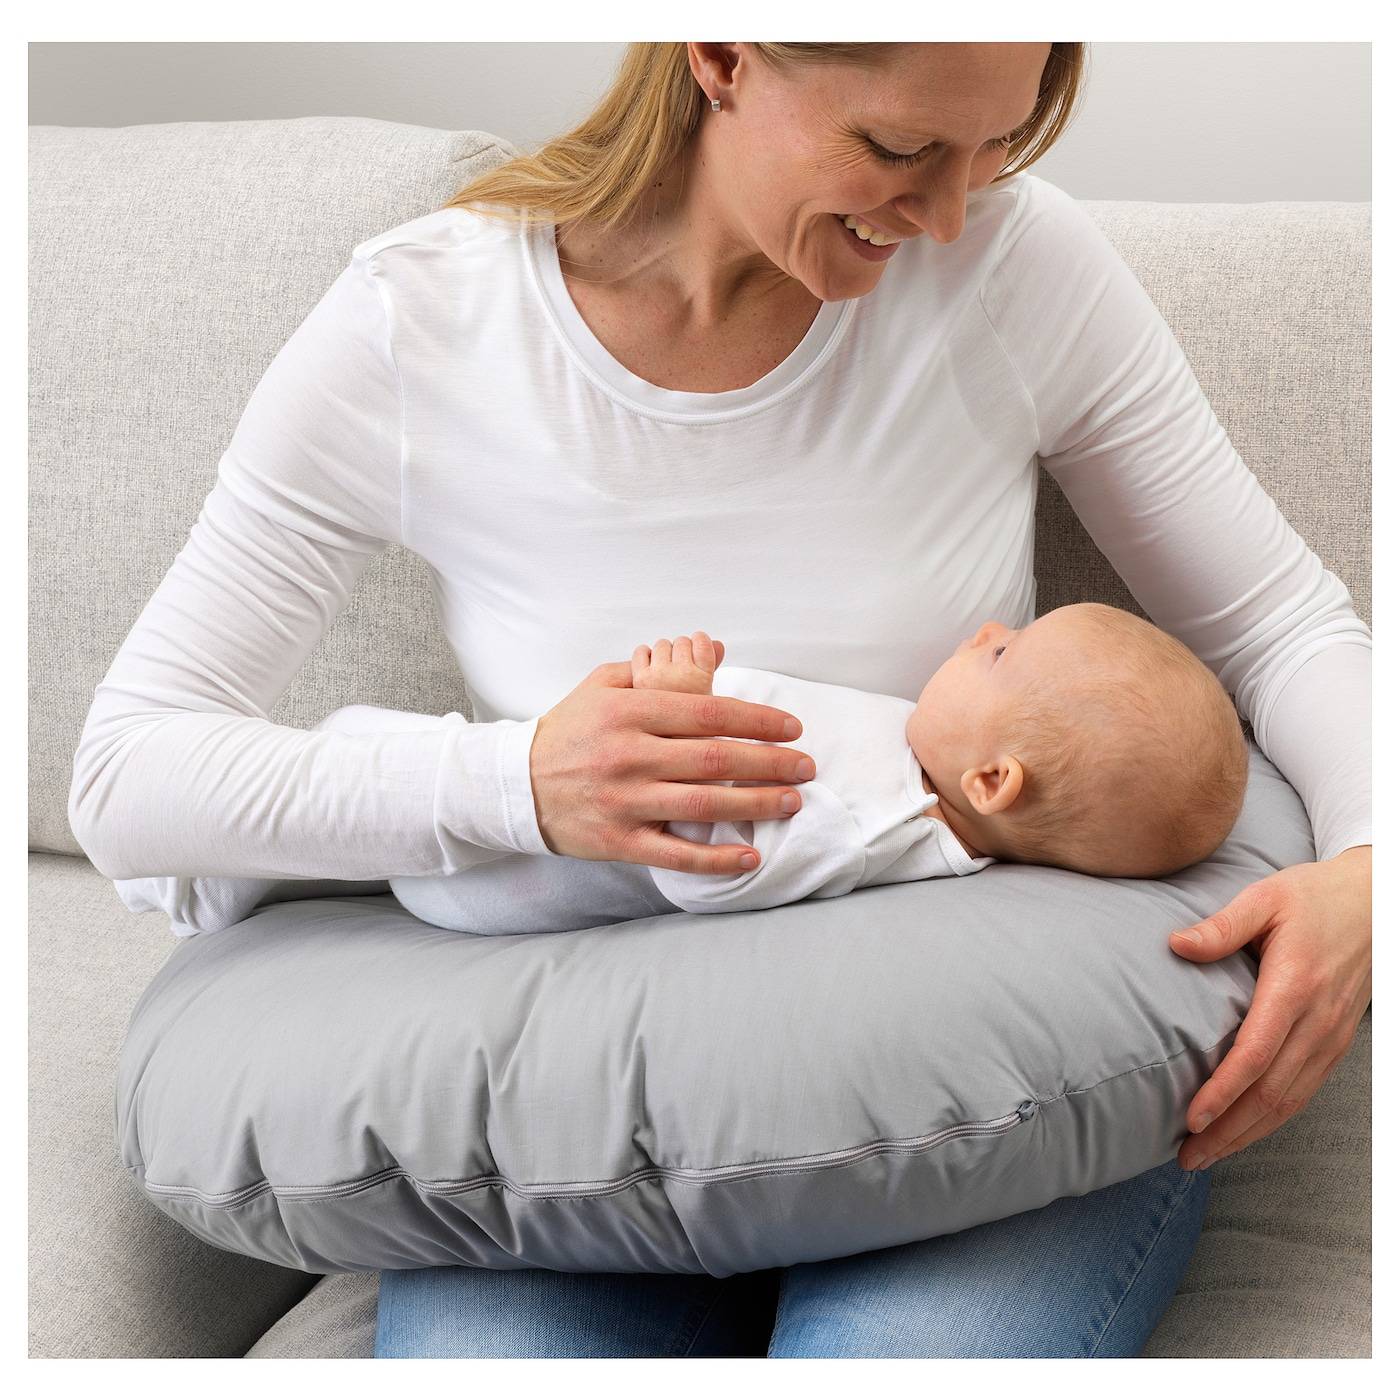 Нужна ли подушка для кормления малыша и как ею пользоваться?